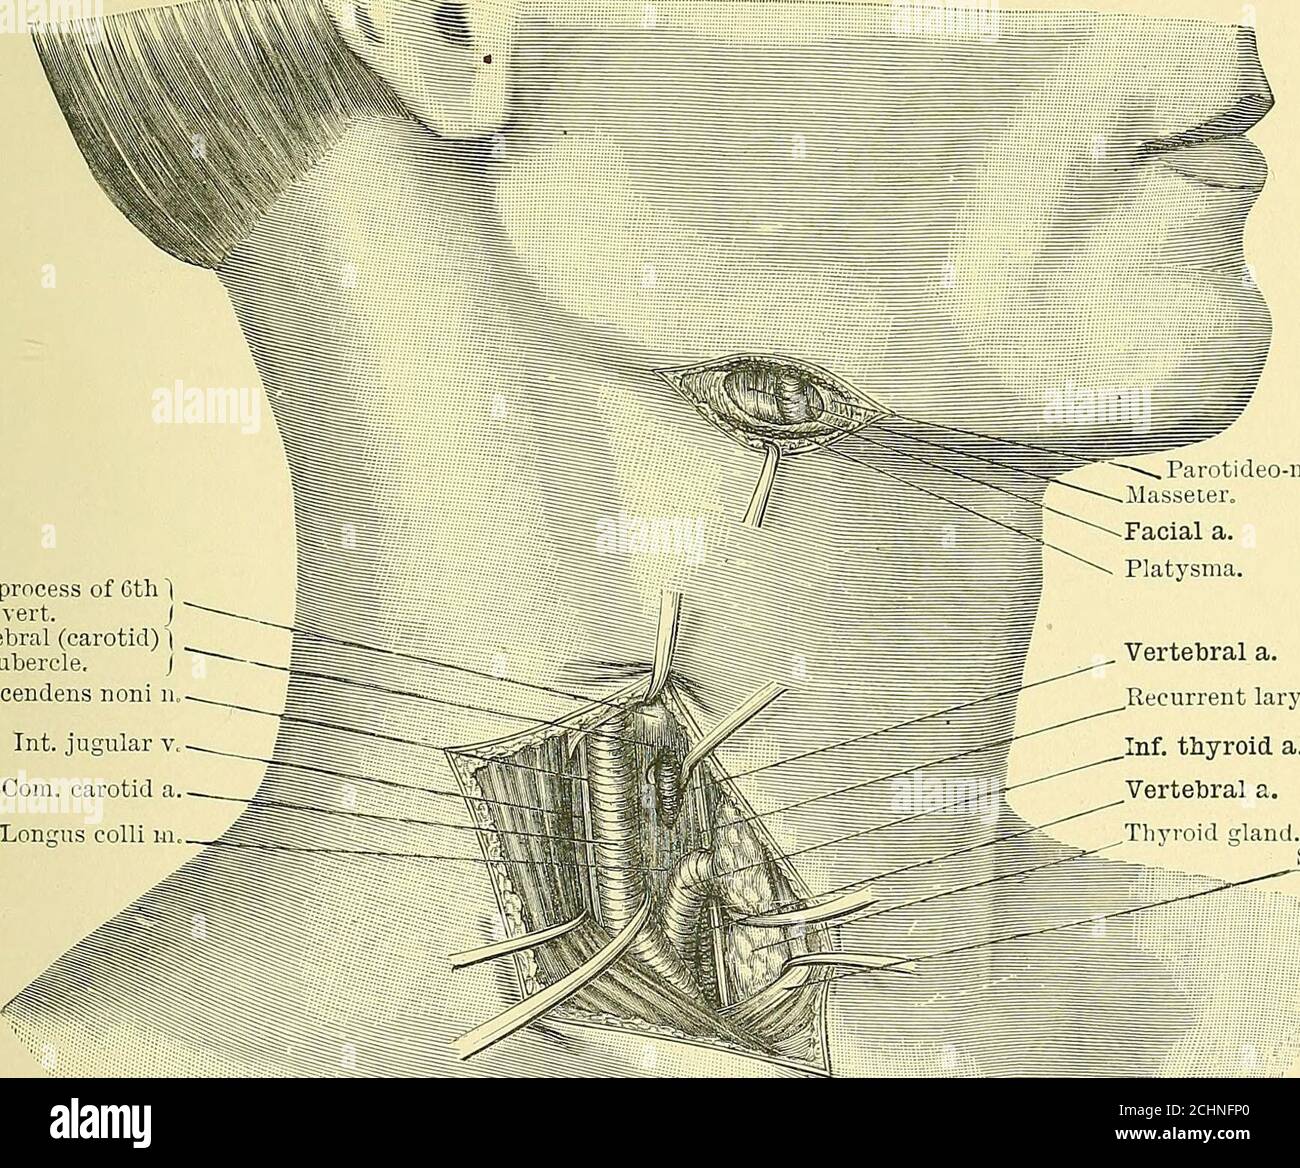 . Texte-livre de chirurgie opérative . iclature de l'artère linguale au-dessus de tlie plus grand cornu de l'hyoïde. Ligature de la carotide commune au niveau du cartilage cricoïde. Ligature de l'artère innominate. Ligature la première partie de l'artère axillaire. Ligature de l'artère mammaire interne. LA CHIRURGIE DU GRAND ARTE RIES cornu de l'os hyoïde par le biais de la skiii, de la platysma et du fascia, et la bordure inférieure de la glande sous-maxillaire est tirée vers le haut avec la veine faciale de tlie. L'artère liesin l'angle formé par la bordure supérieure du digastrique (avec le muscle stylo-hyoidmuscle) et t Banque D'Images